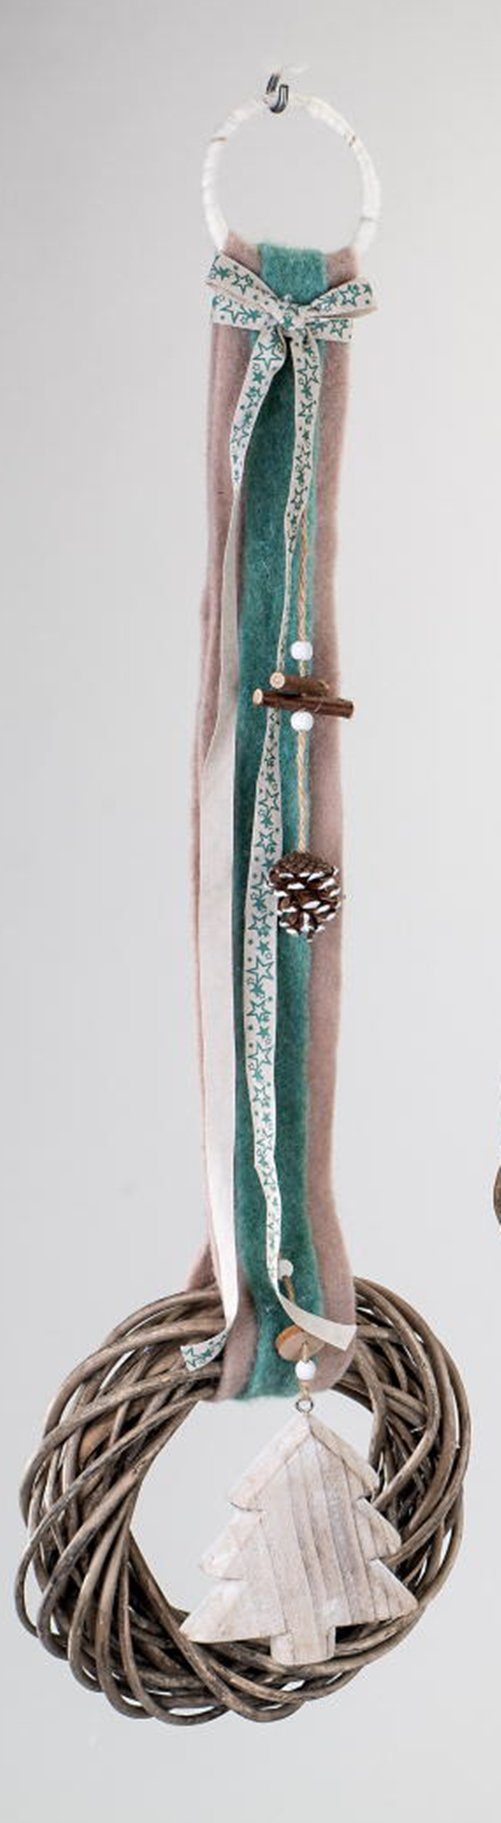 dekojohnson Hängedekoration Dekohänger aus Rattan mit eingehängtem Tannenbaum